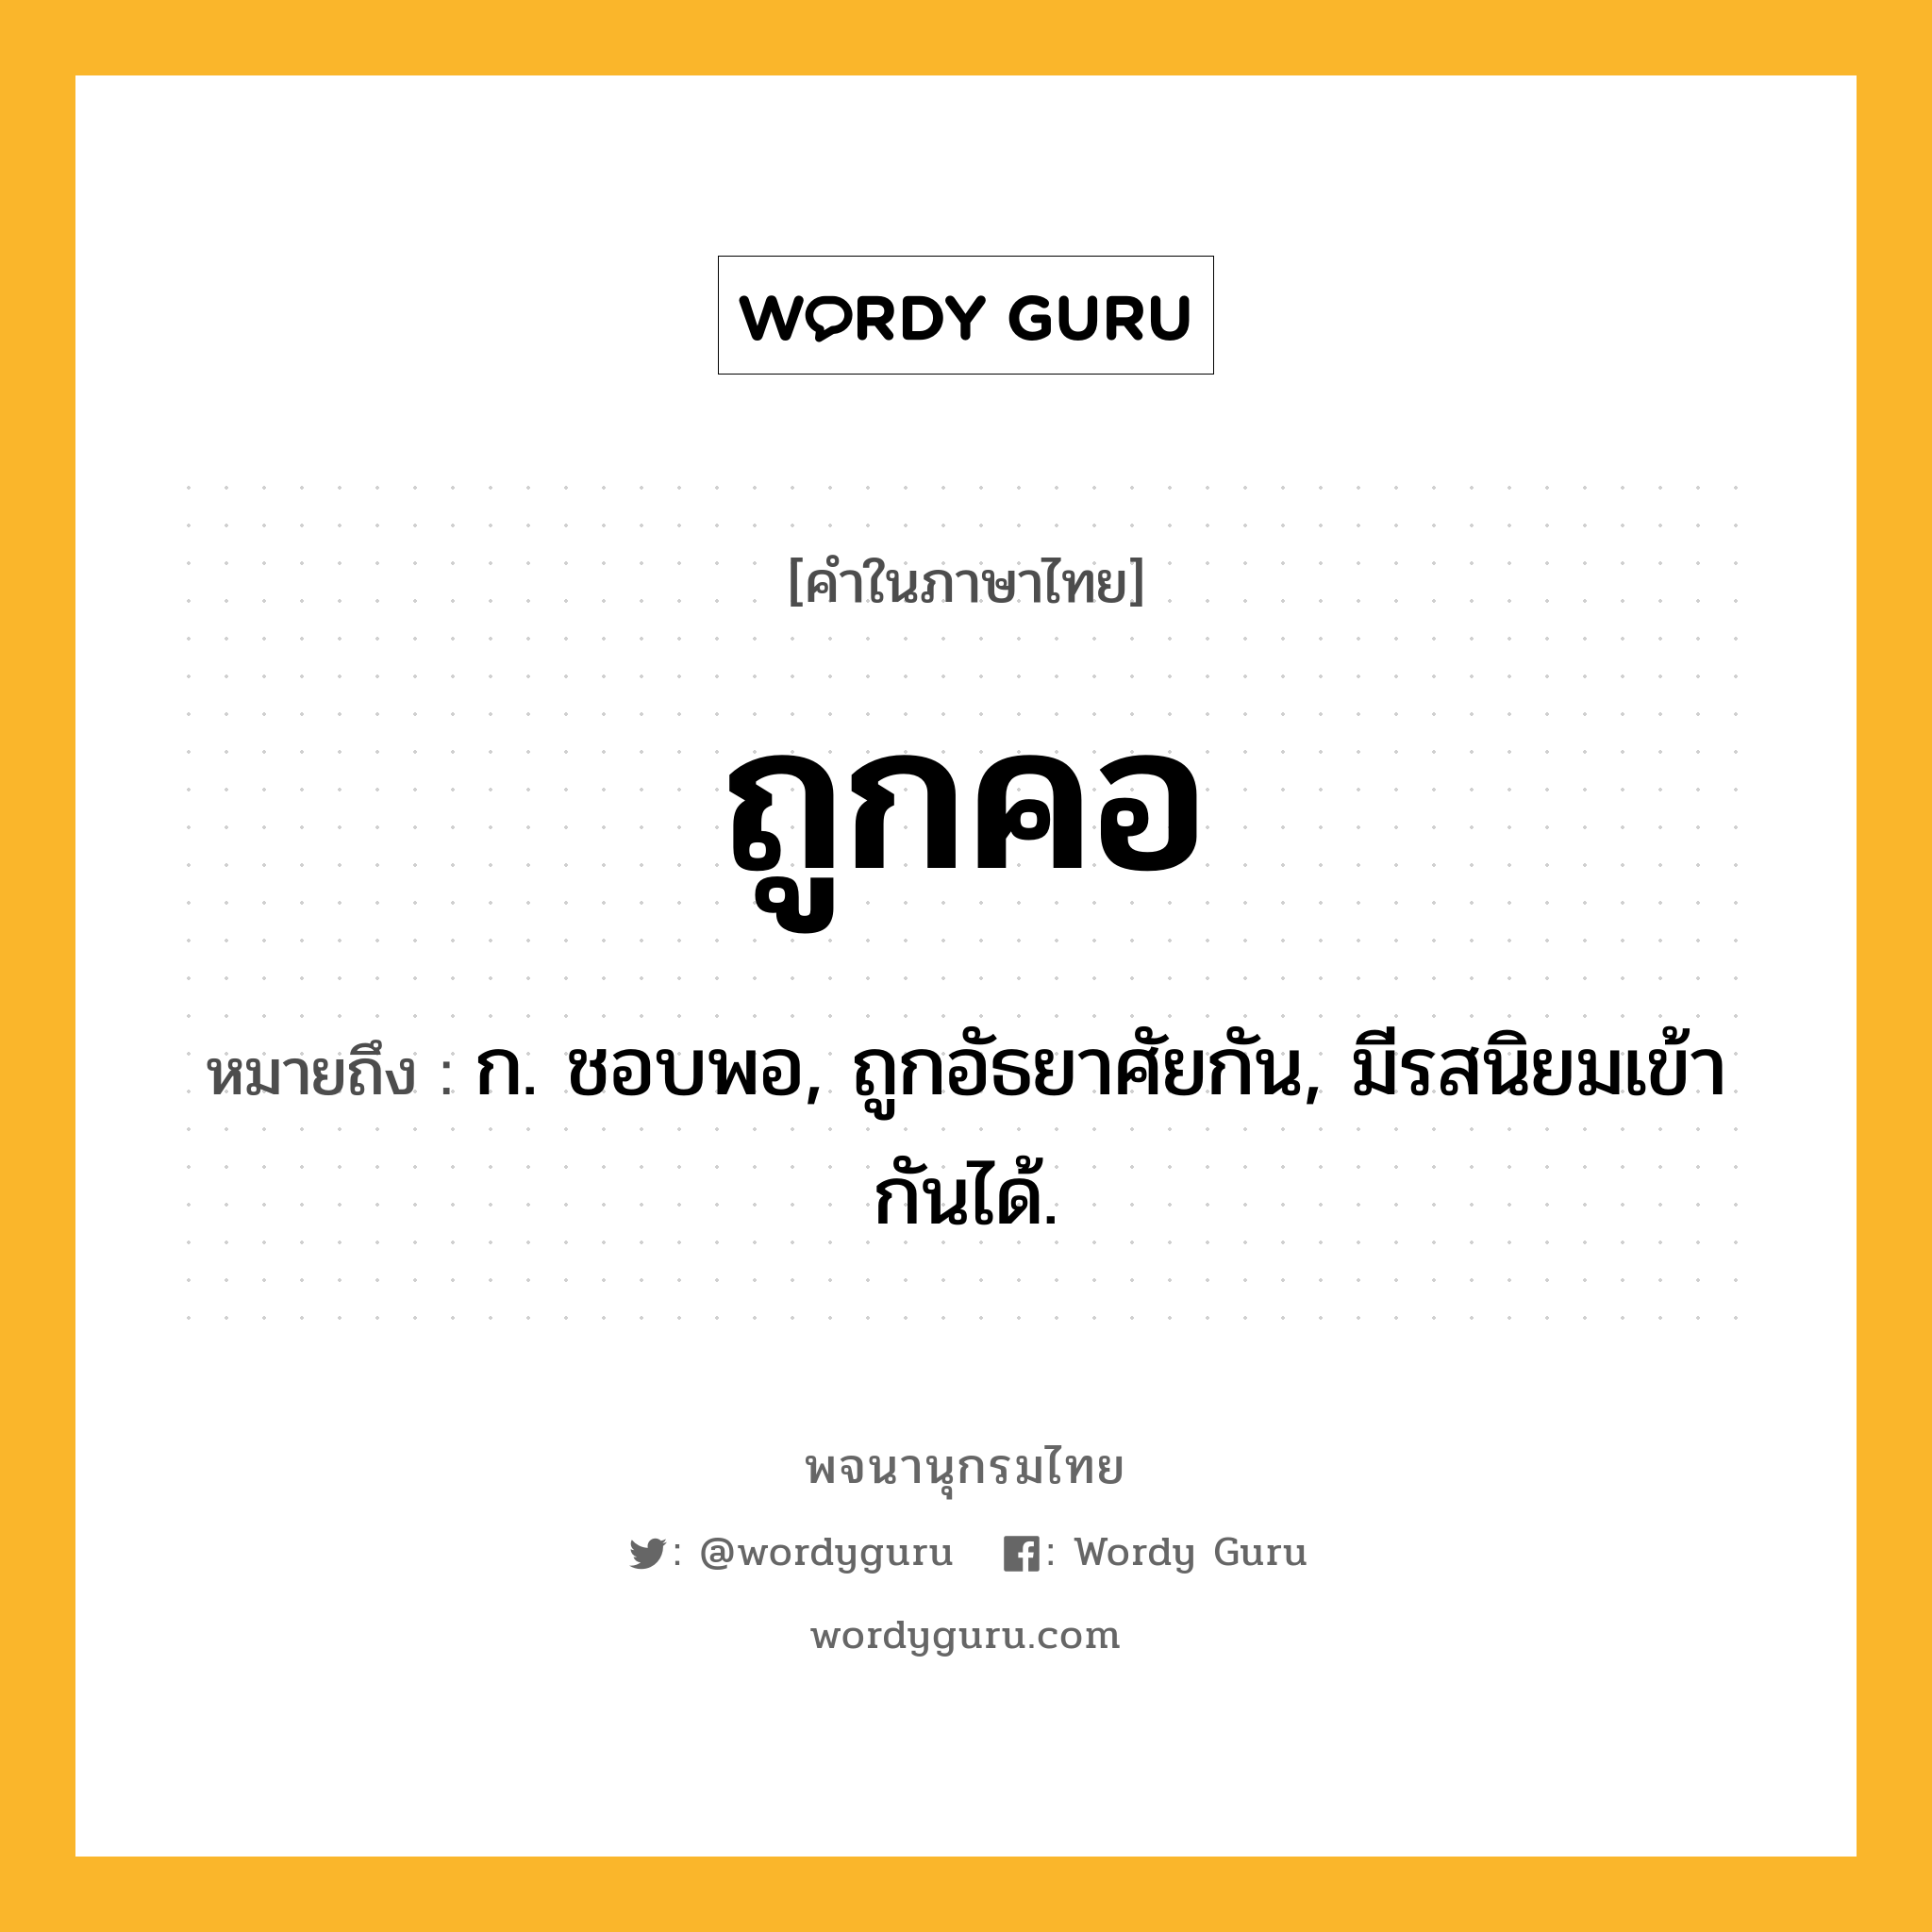 ถูกคอ ความหมาย หมายถึงอะไร?, คำในภาษาไทย ถูกคอ หมายถึง ก. ชอบพอ, ถูกอัธยาศัยกัน, มีรสนิยมเข้ากันได้.